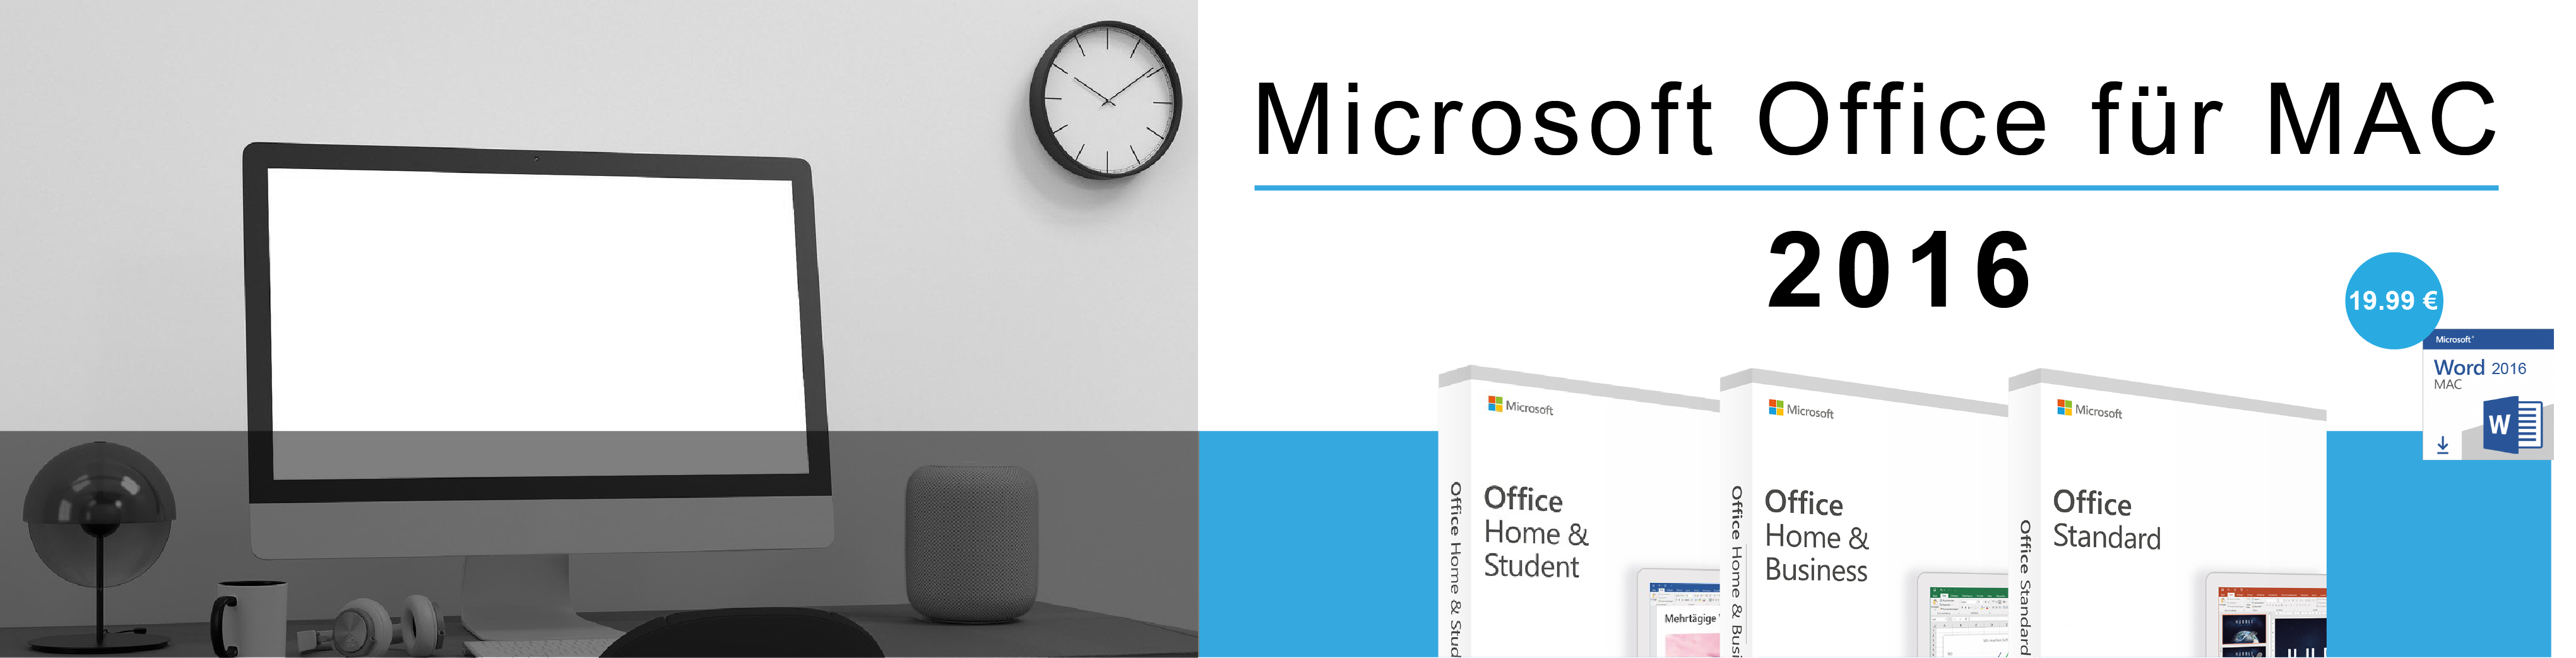 Microsoft Office für Mac 2016